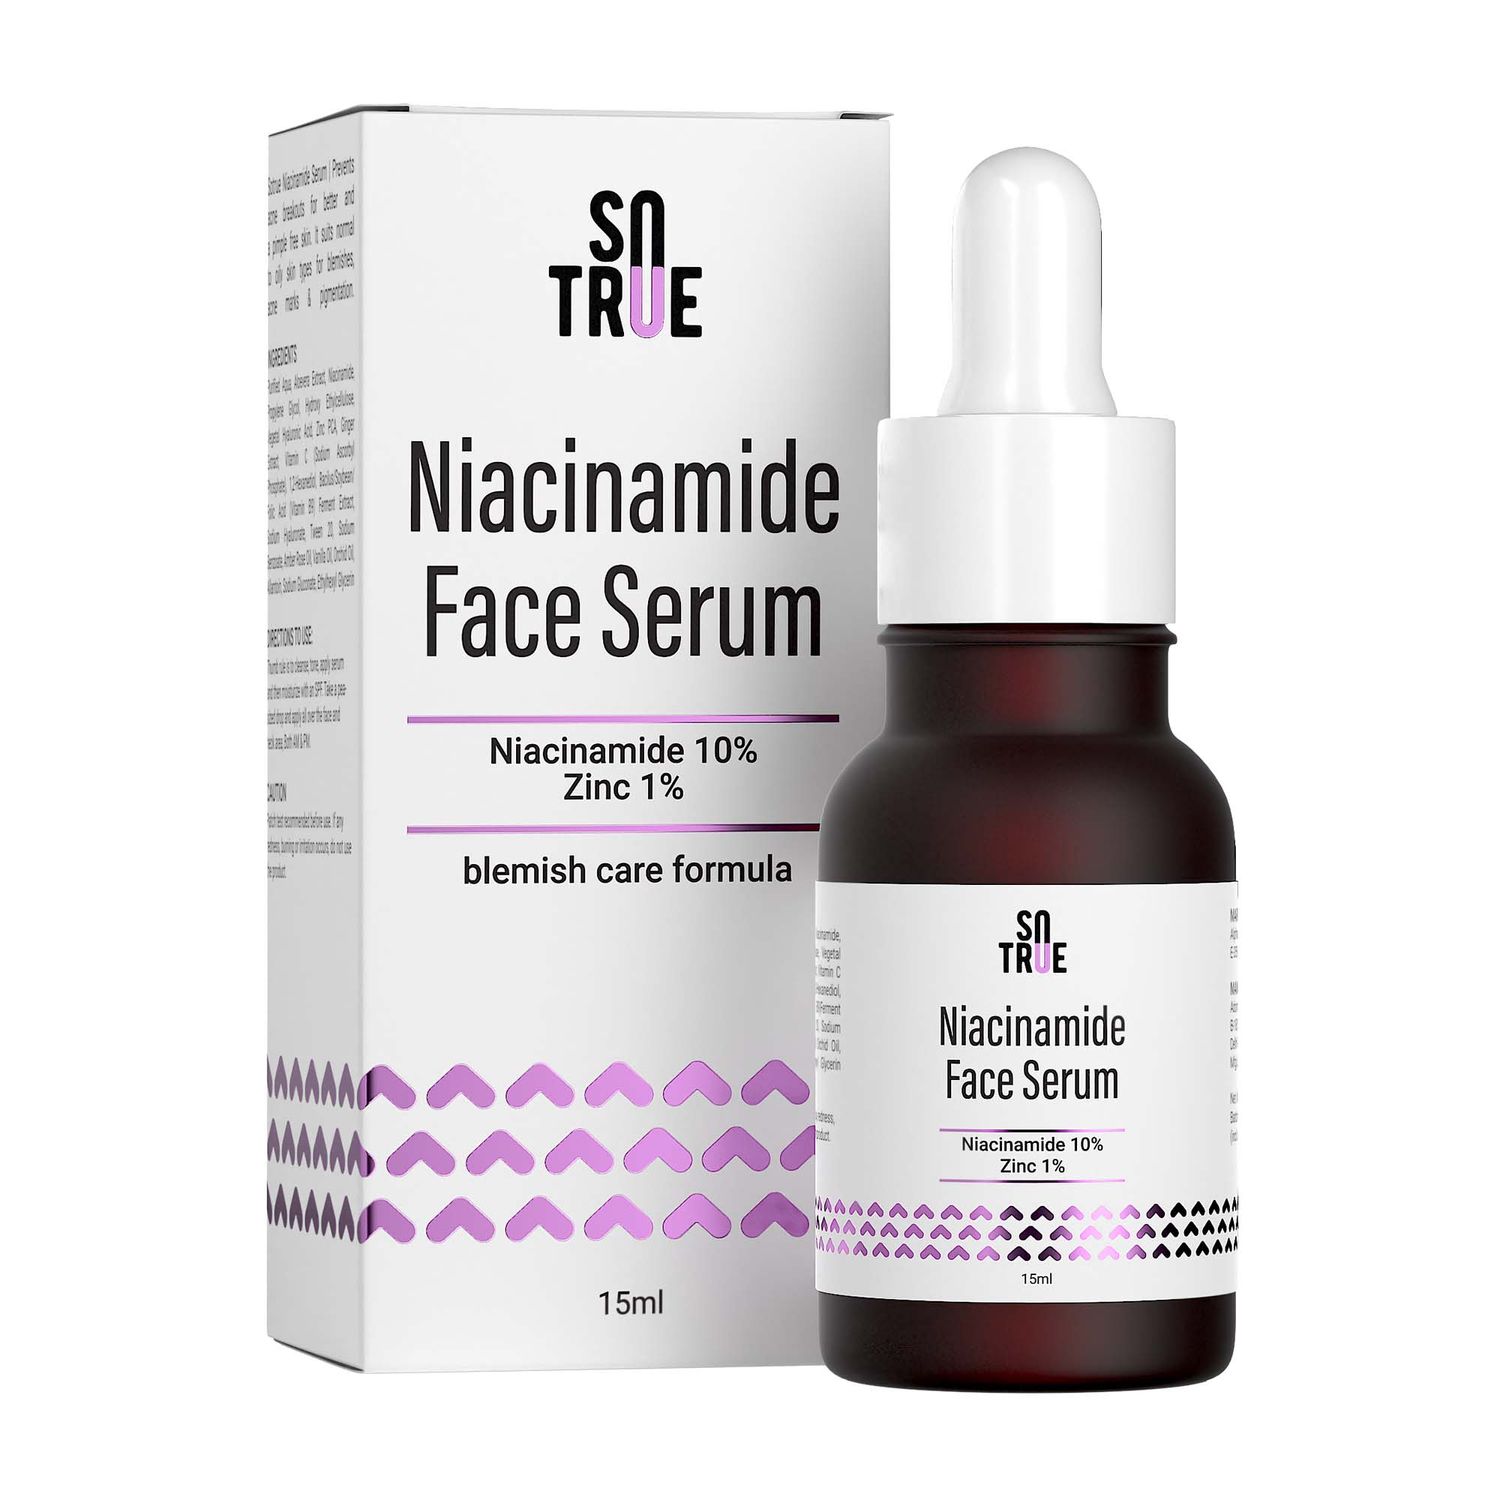 10% Niacinamide Serum with Zinc PCA for Acne & Sebum Control